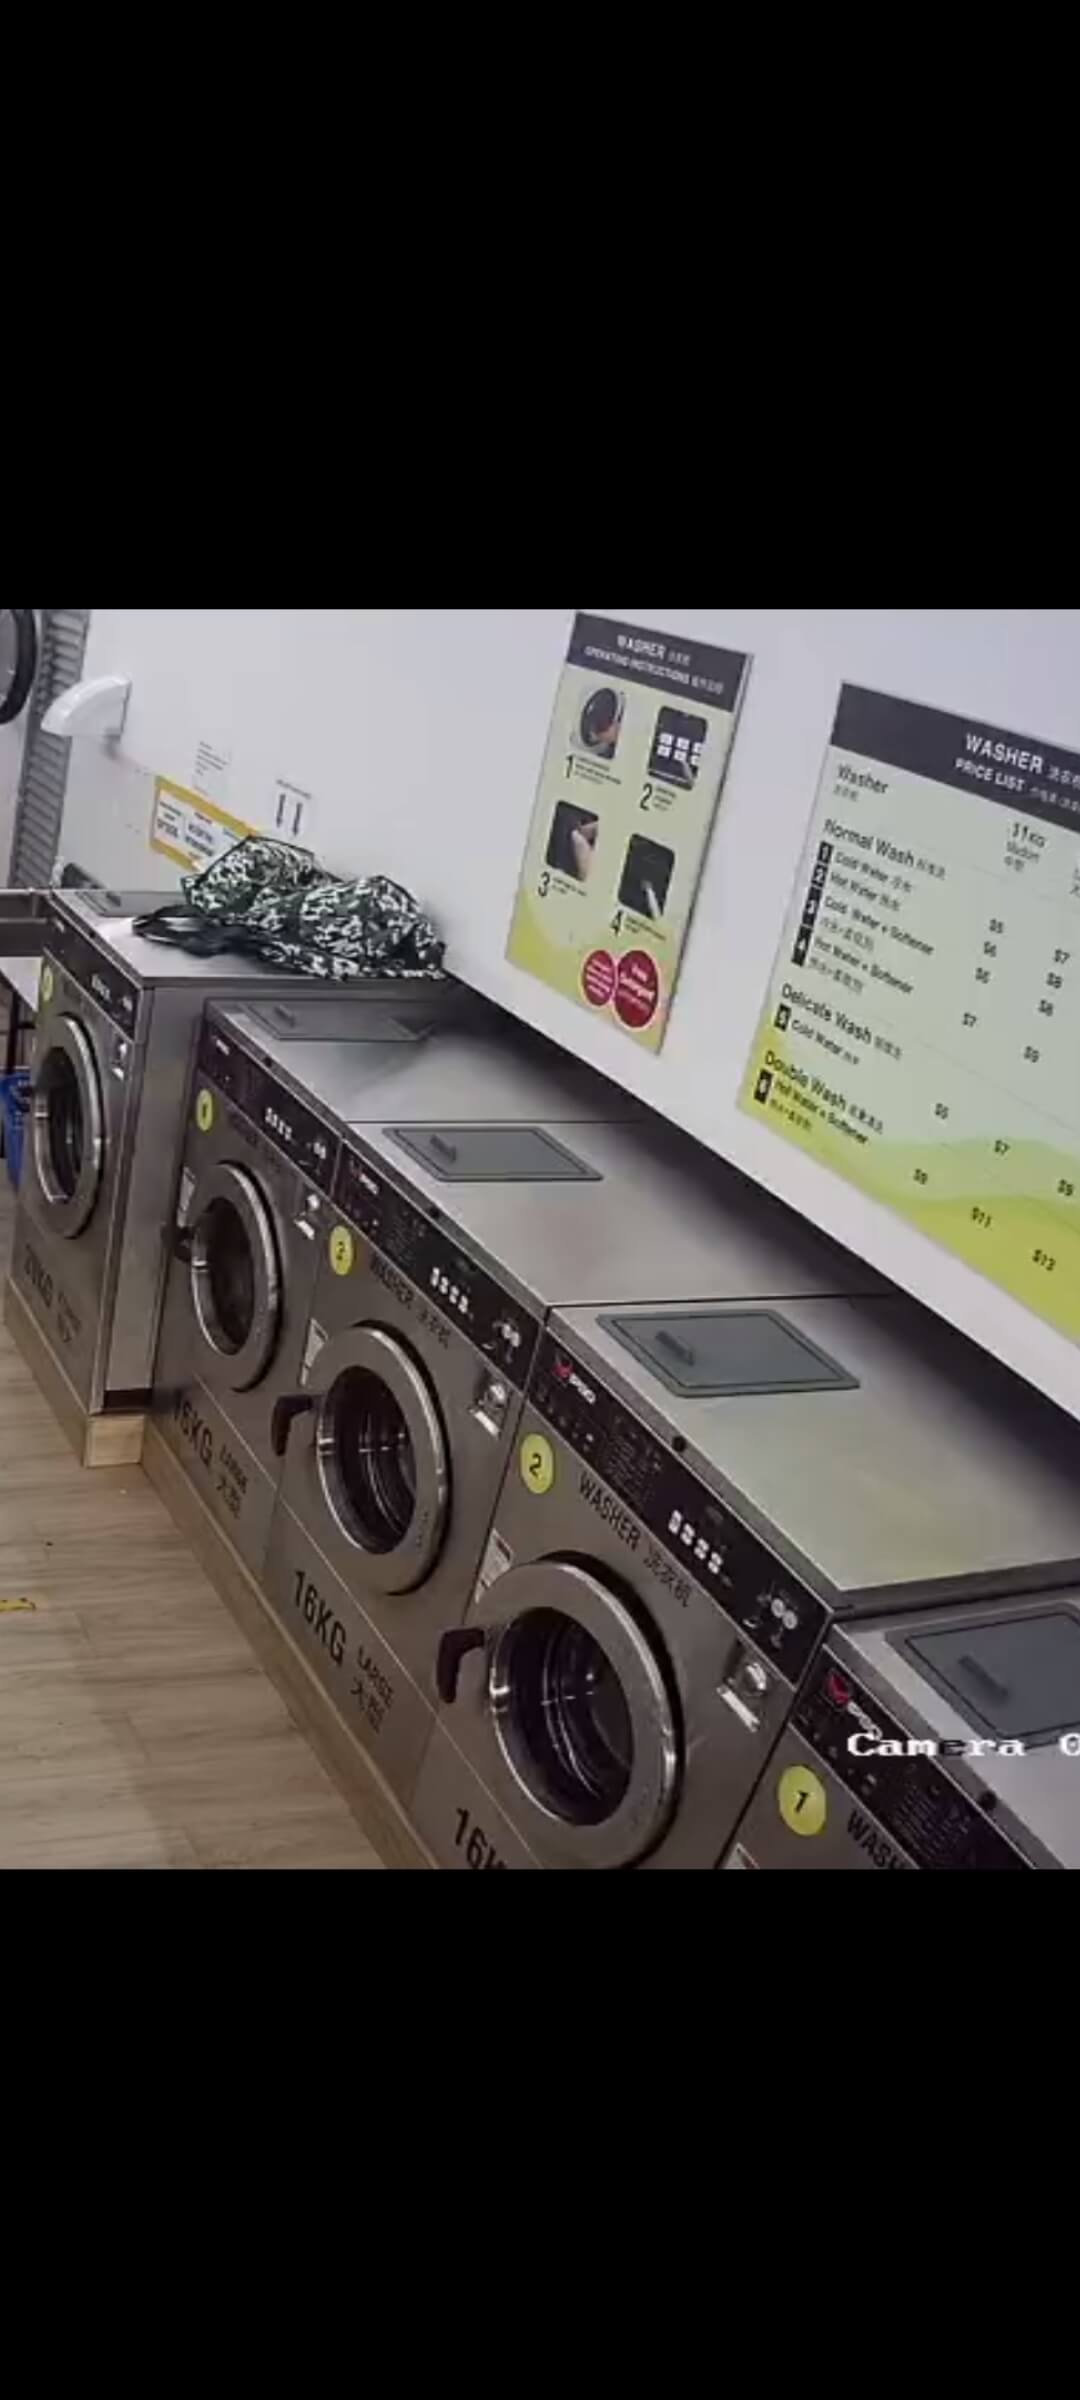 Laundromat For Sale